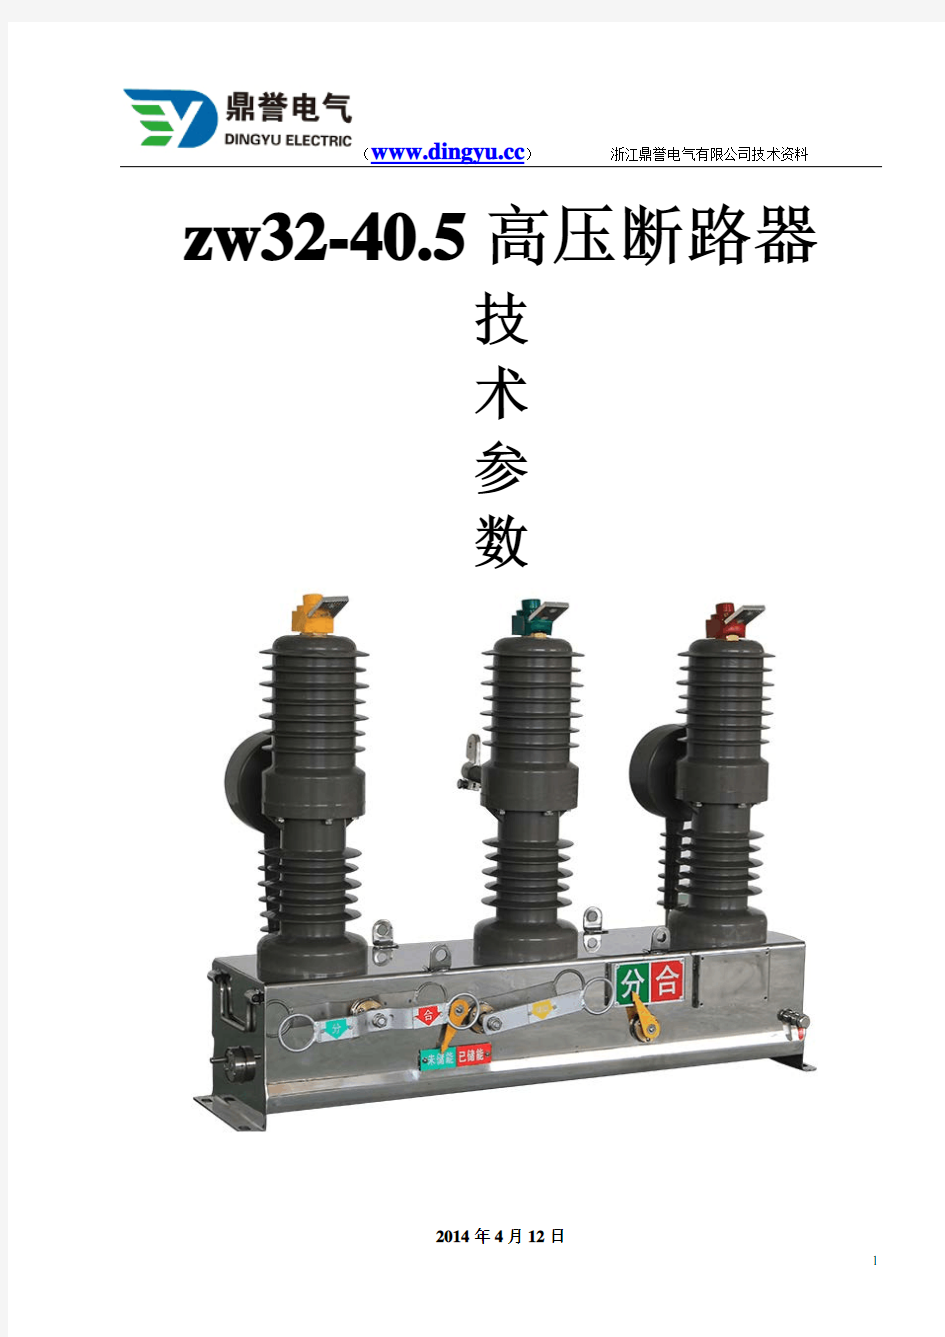 zw32-40.5高压断路器技术详细参数